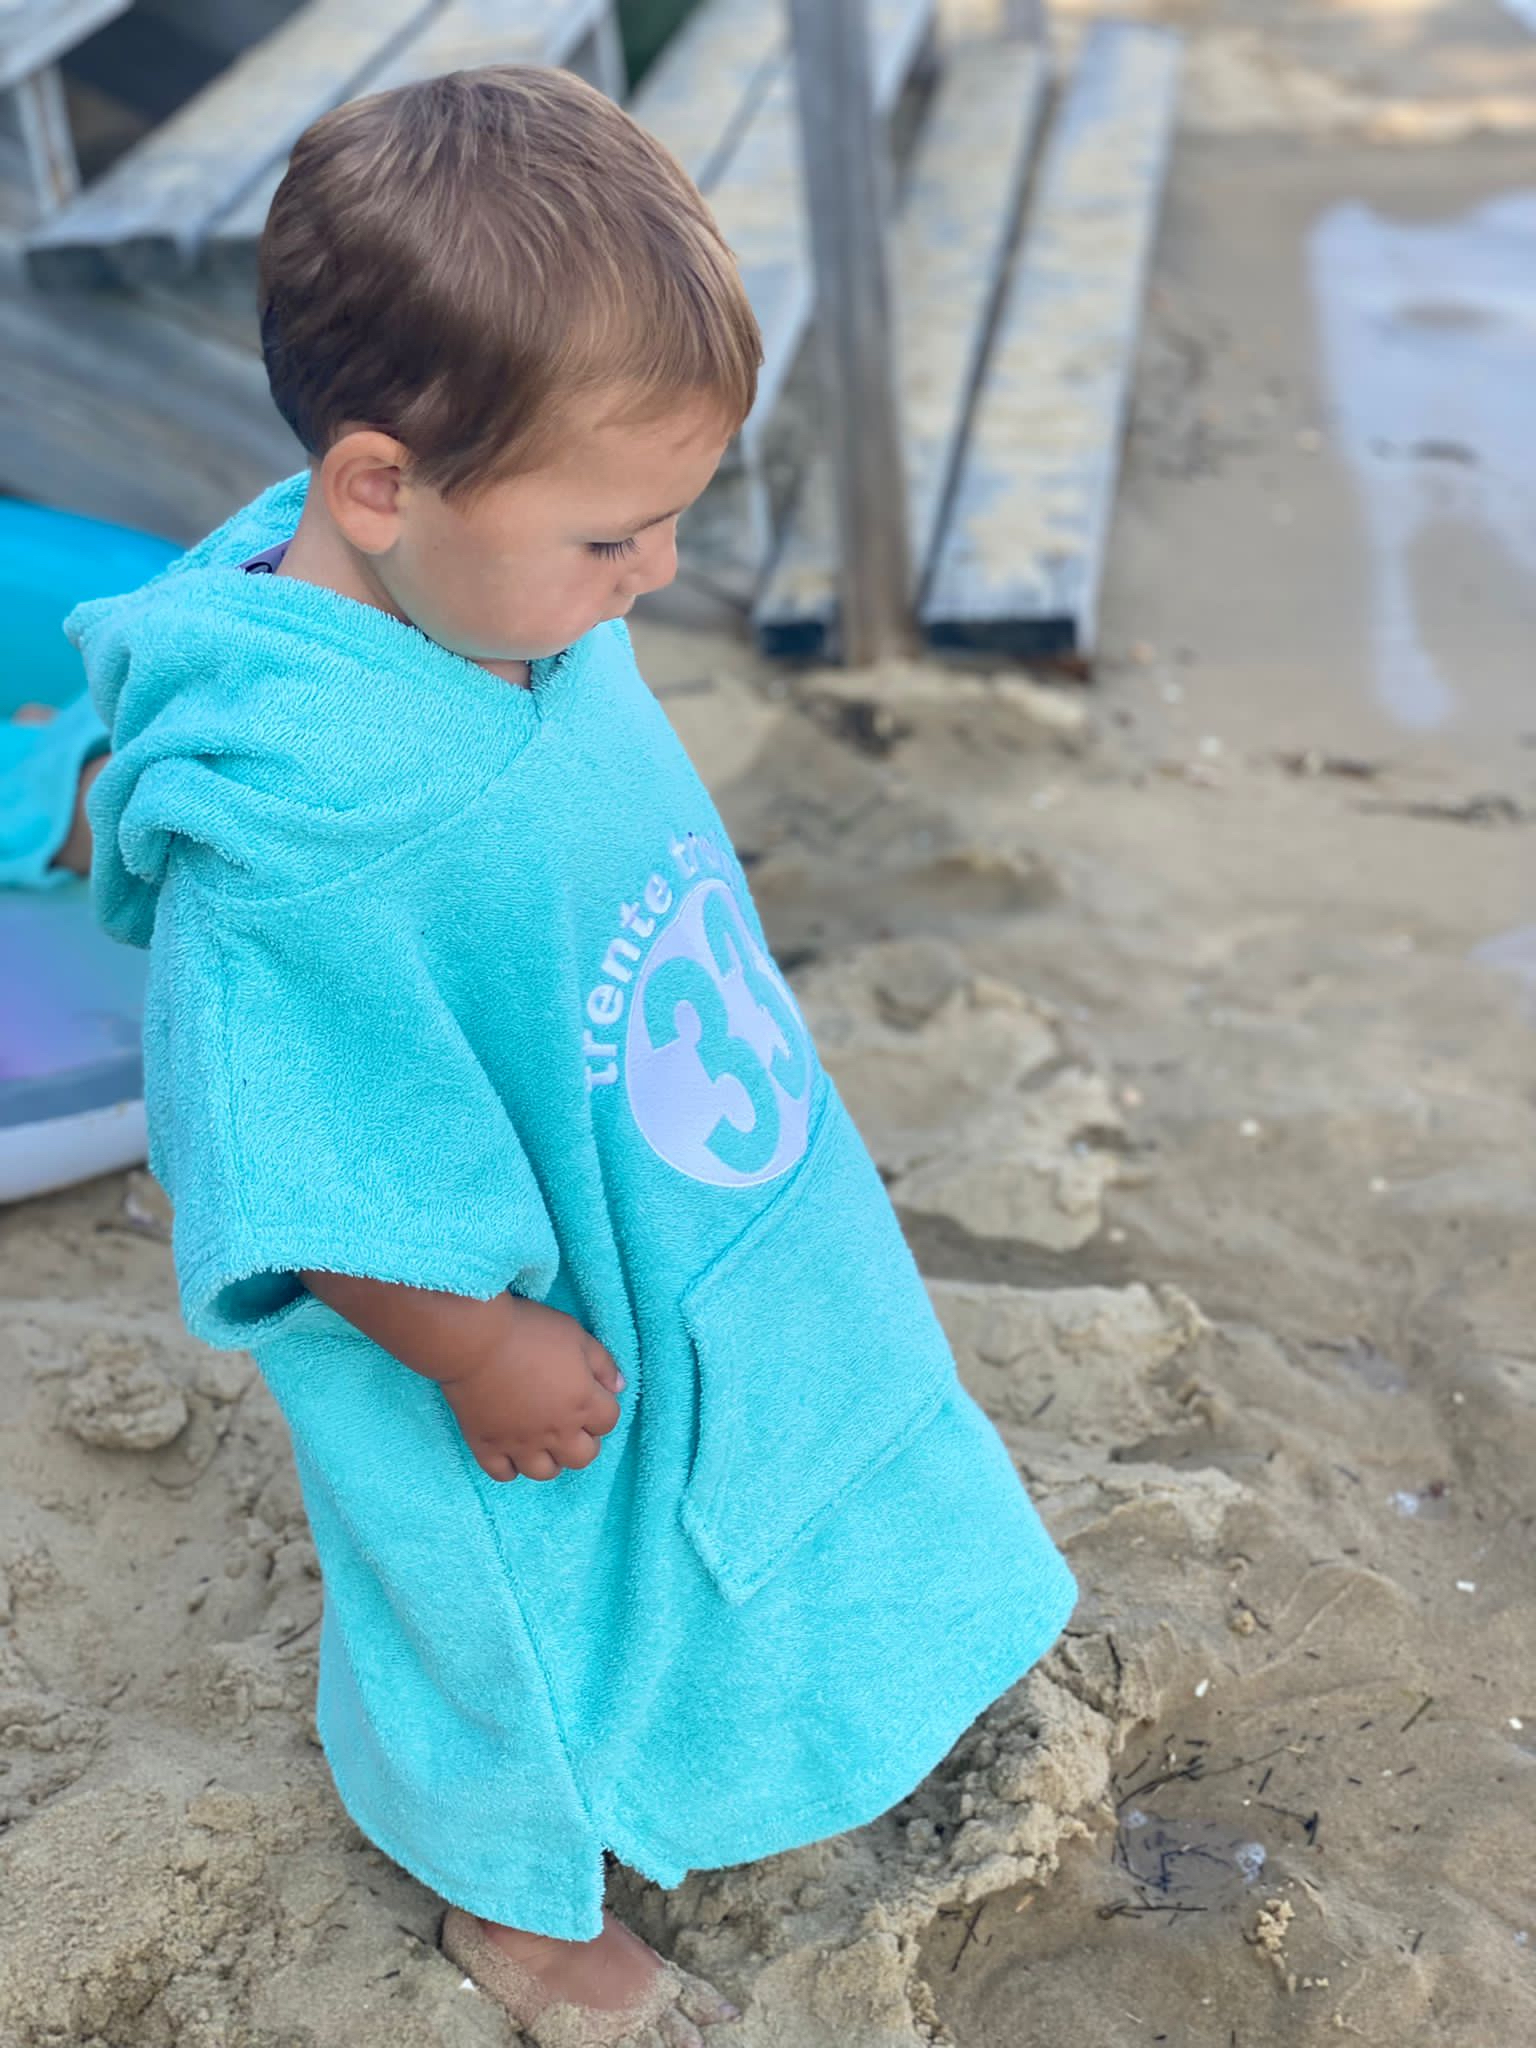 Un poncho turquoise pour bébé, estampillé "trente-trois" de la marque régionale 33.